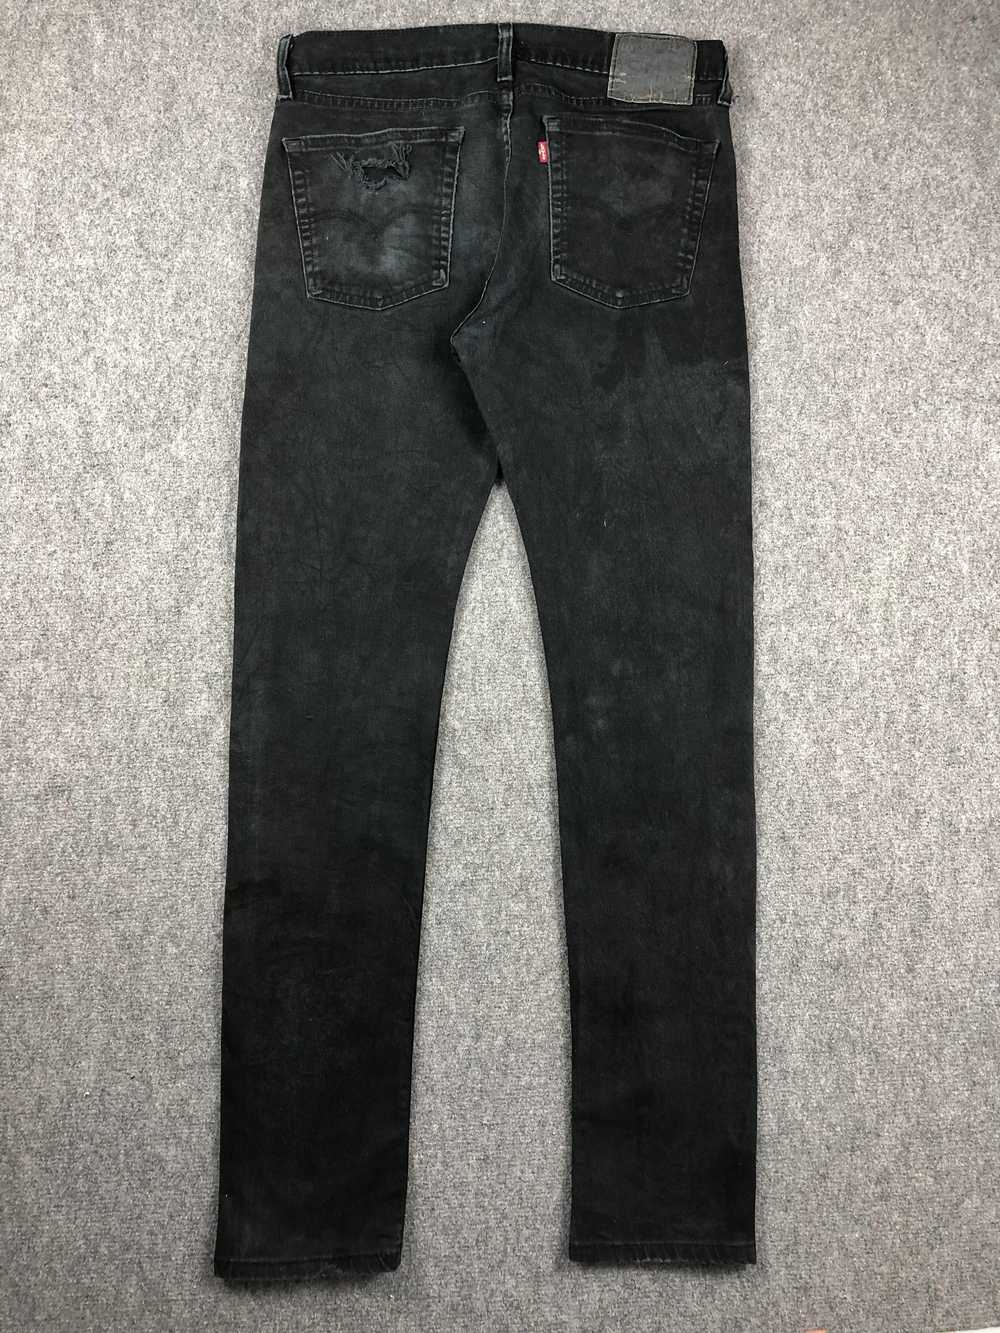 Vintage - Vintage Levis 510 Faded Black Jeans - image 3